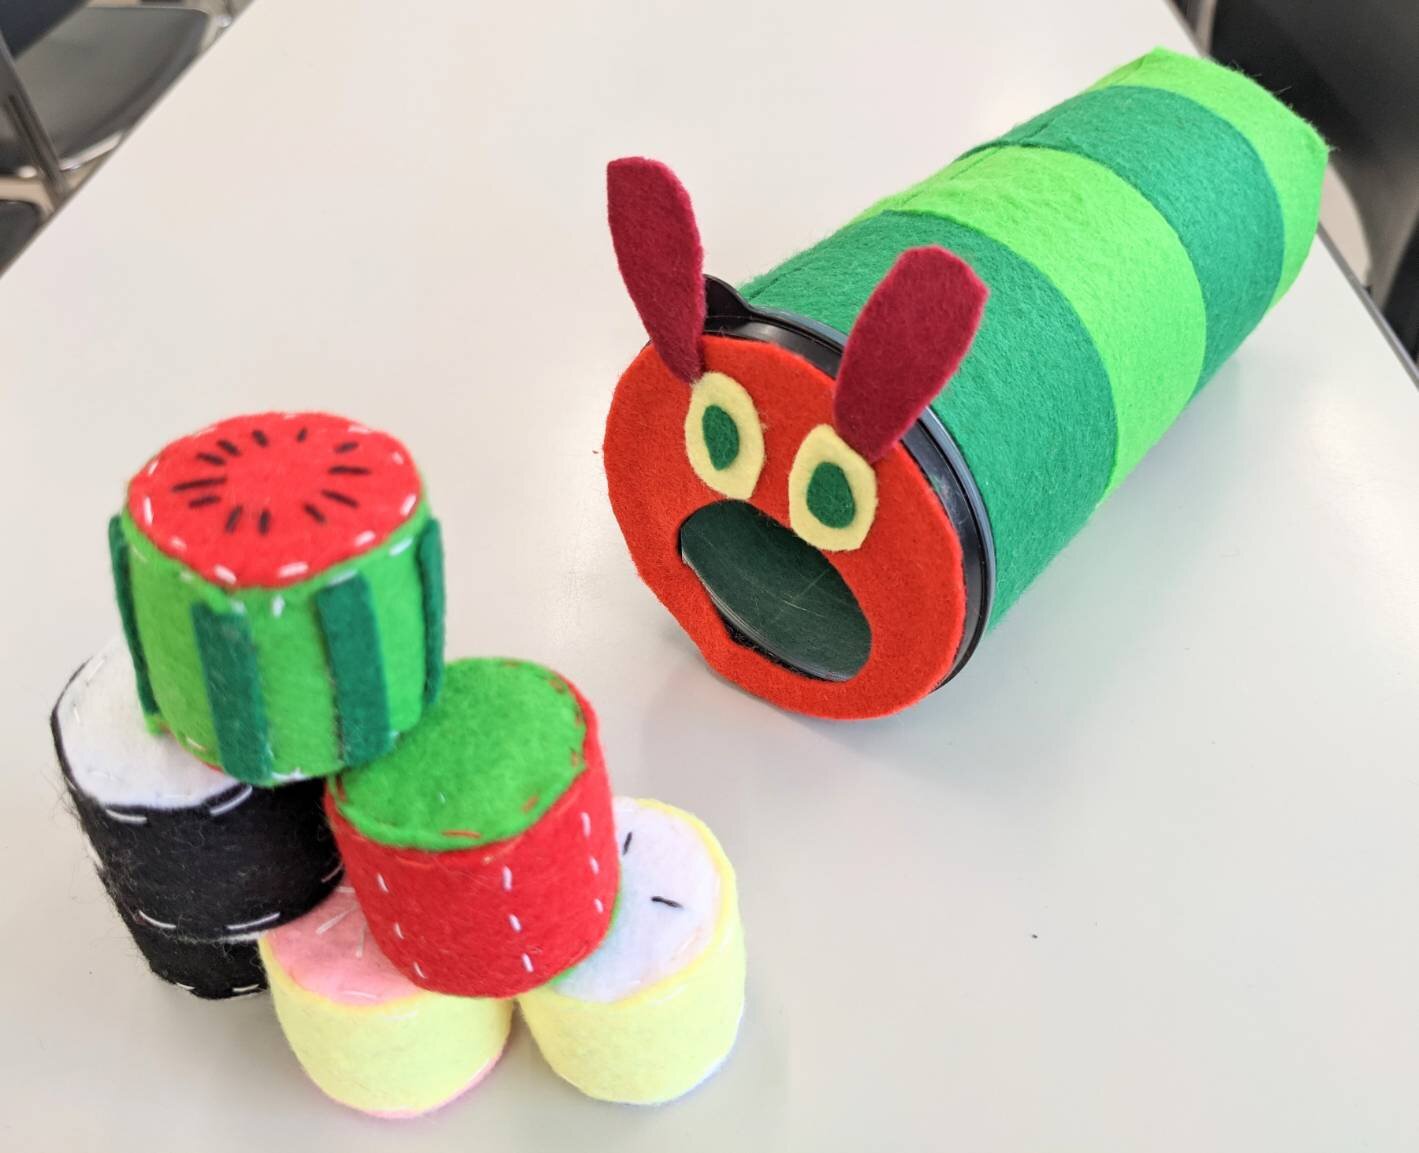 乳児保育 の授業で手作りおもちゃを製作しました 学科ニュース 学校法人 桜花学園 名古屋短期大学